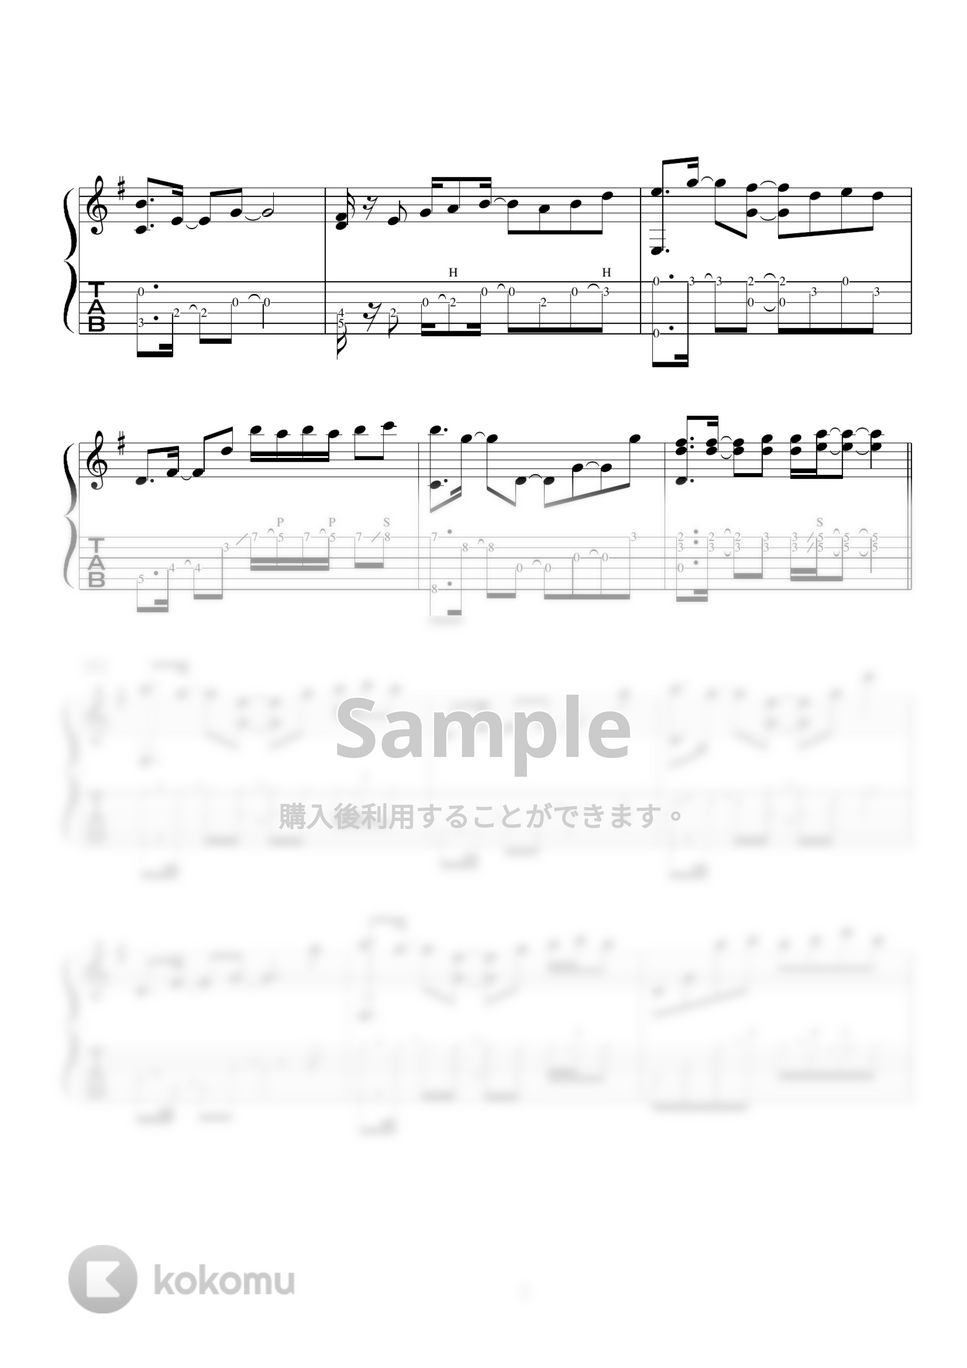 LiSA - 紅蓮華 アコギソロギター 演奏動画付TAB譜 by バイトーン音楽教室